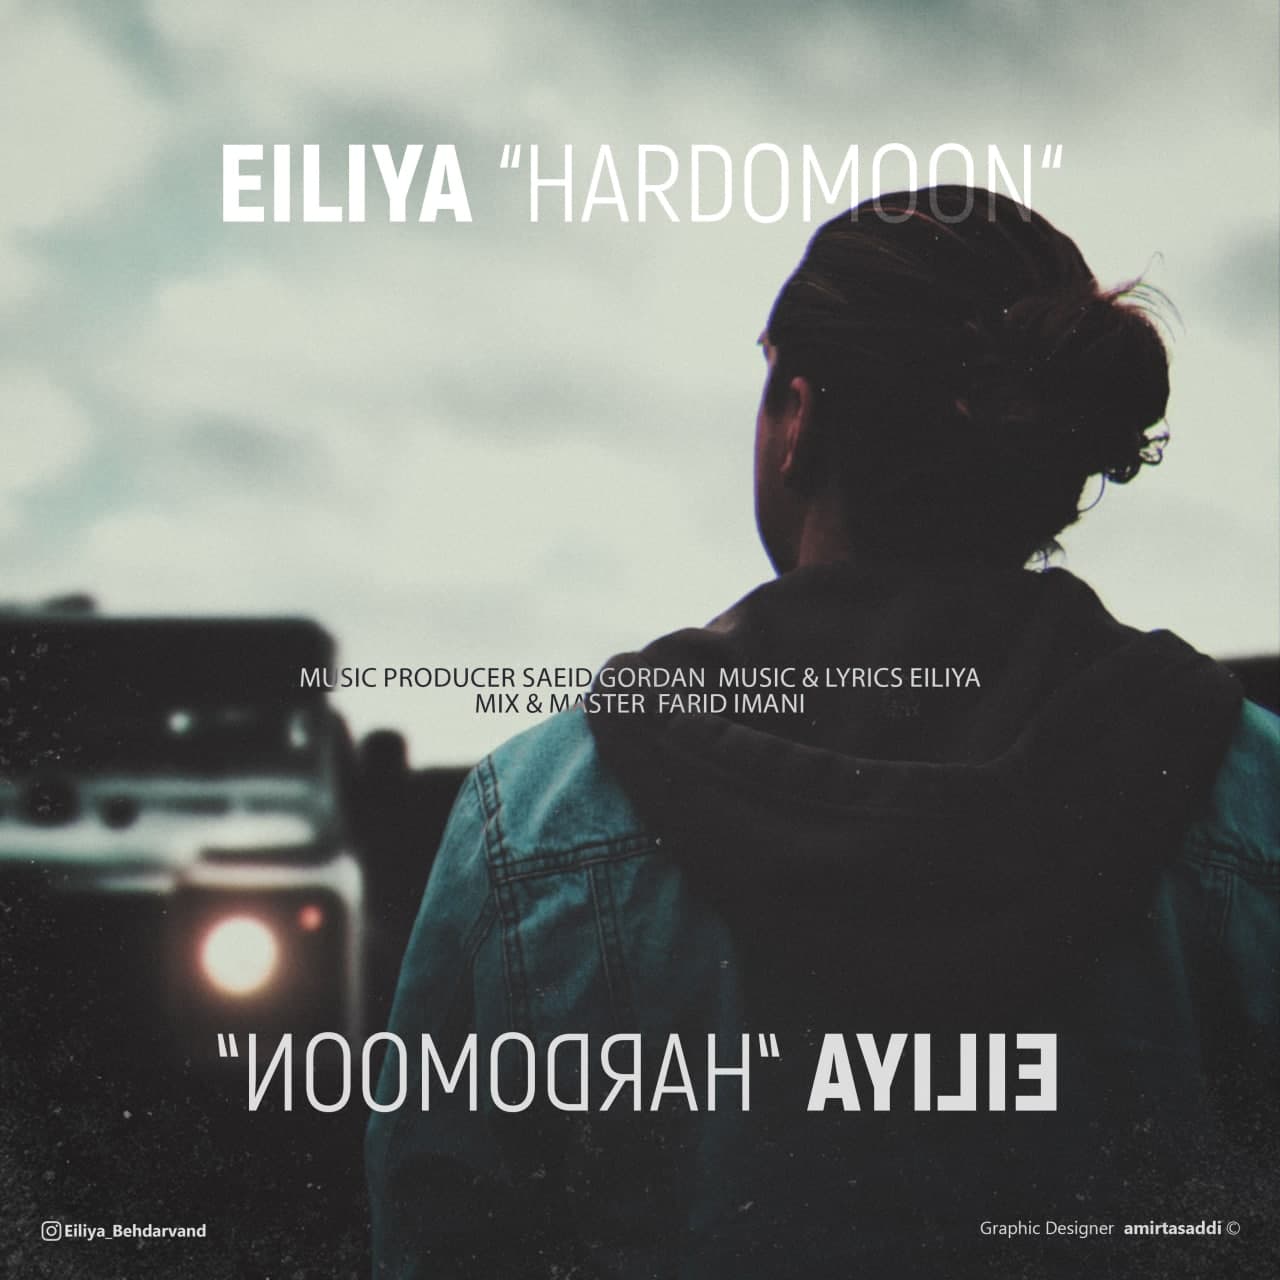 Eiliya – Hardomoon